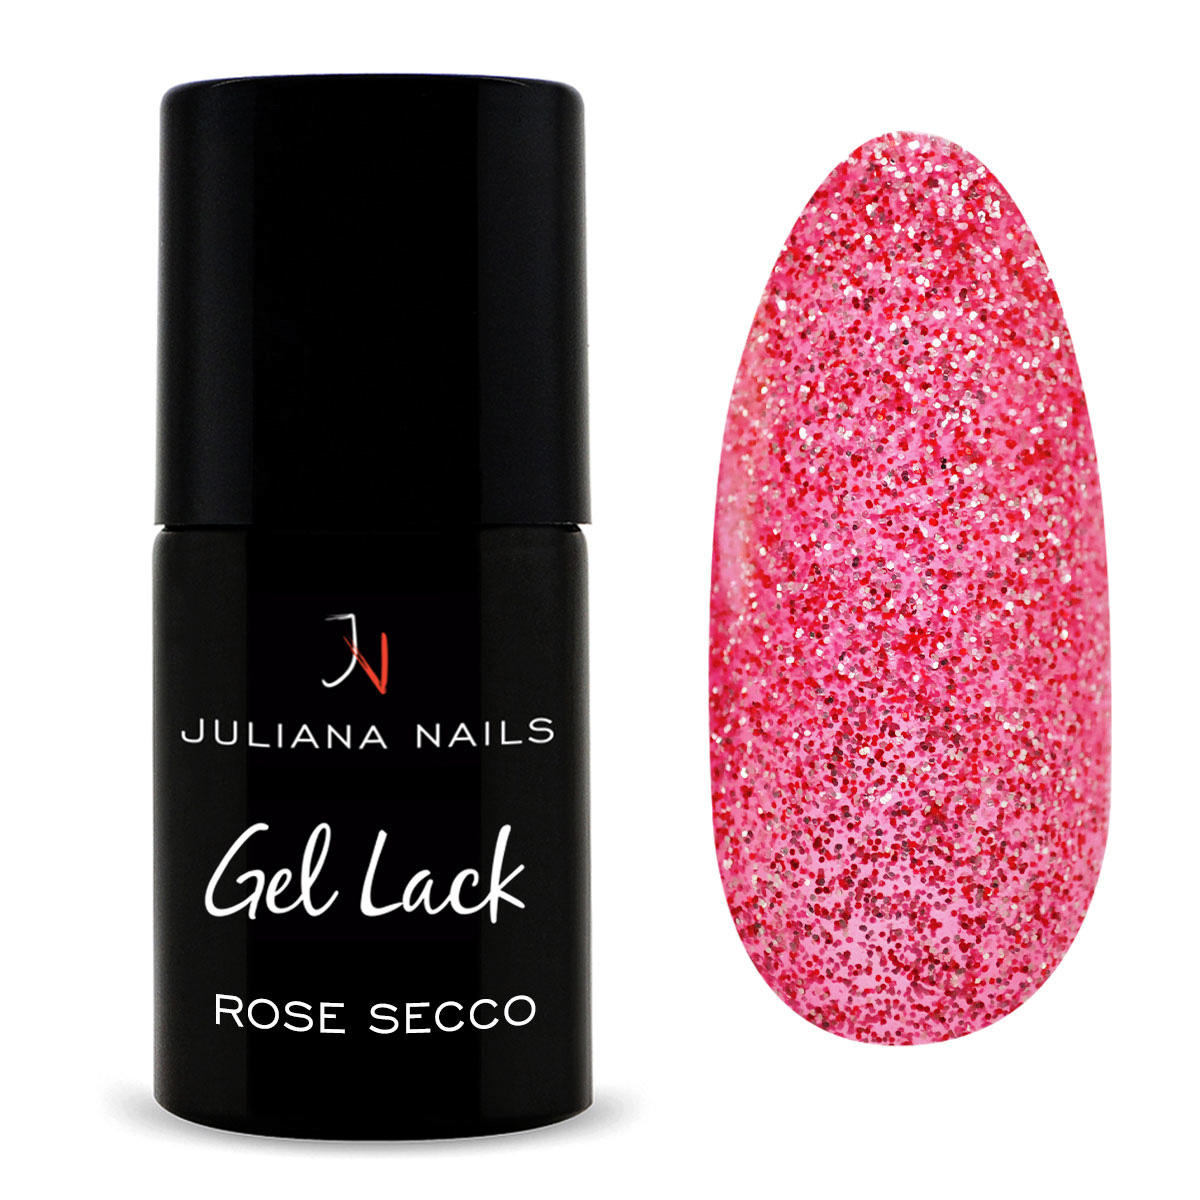 Juliana Nails Gel Lack Glitter/Shimmer Rose Secco, Flasche 6 ml - 1